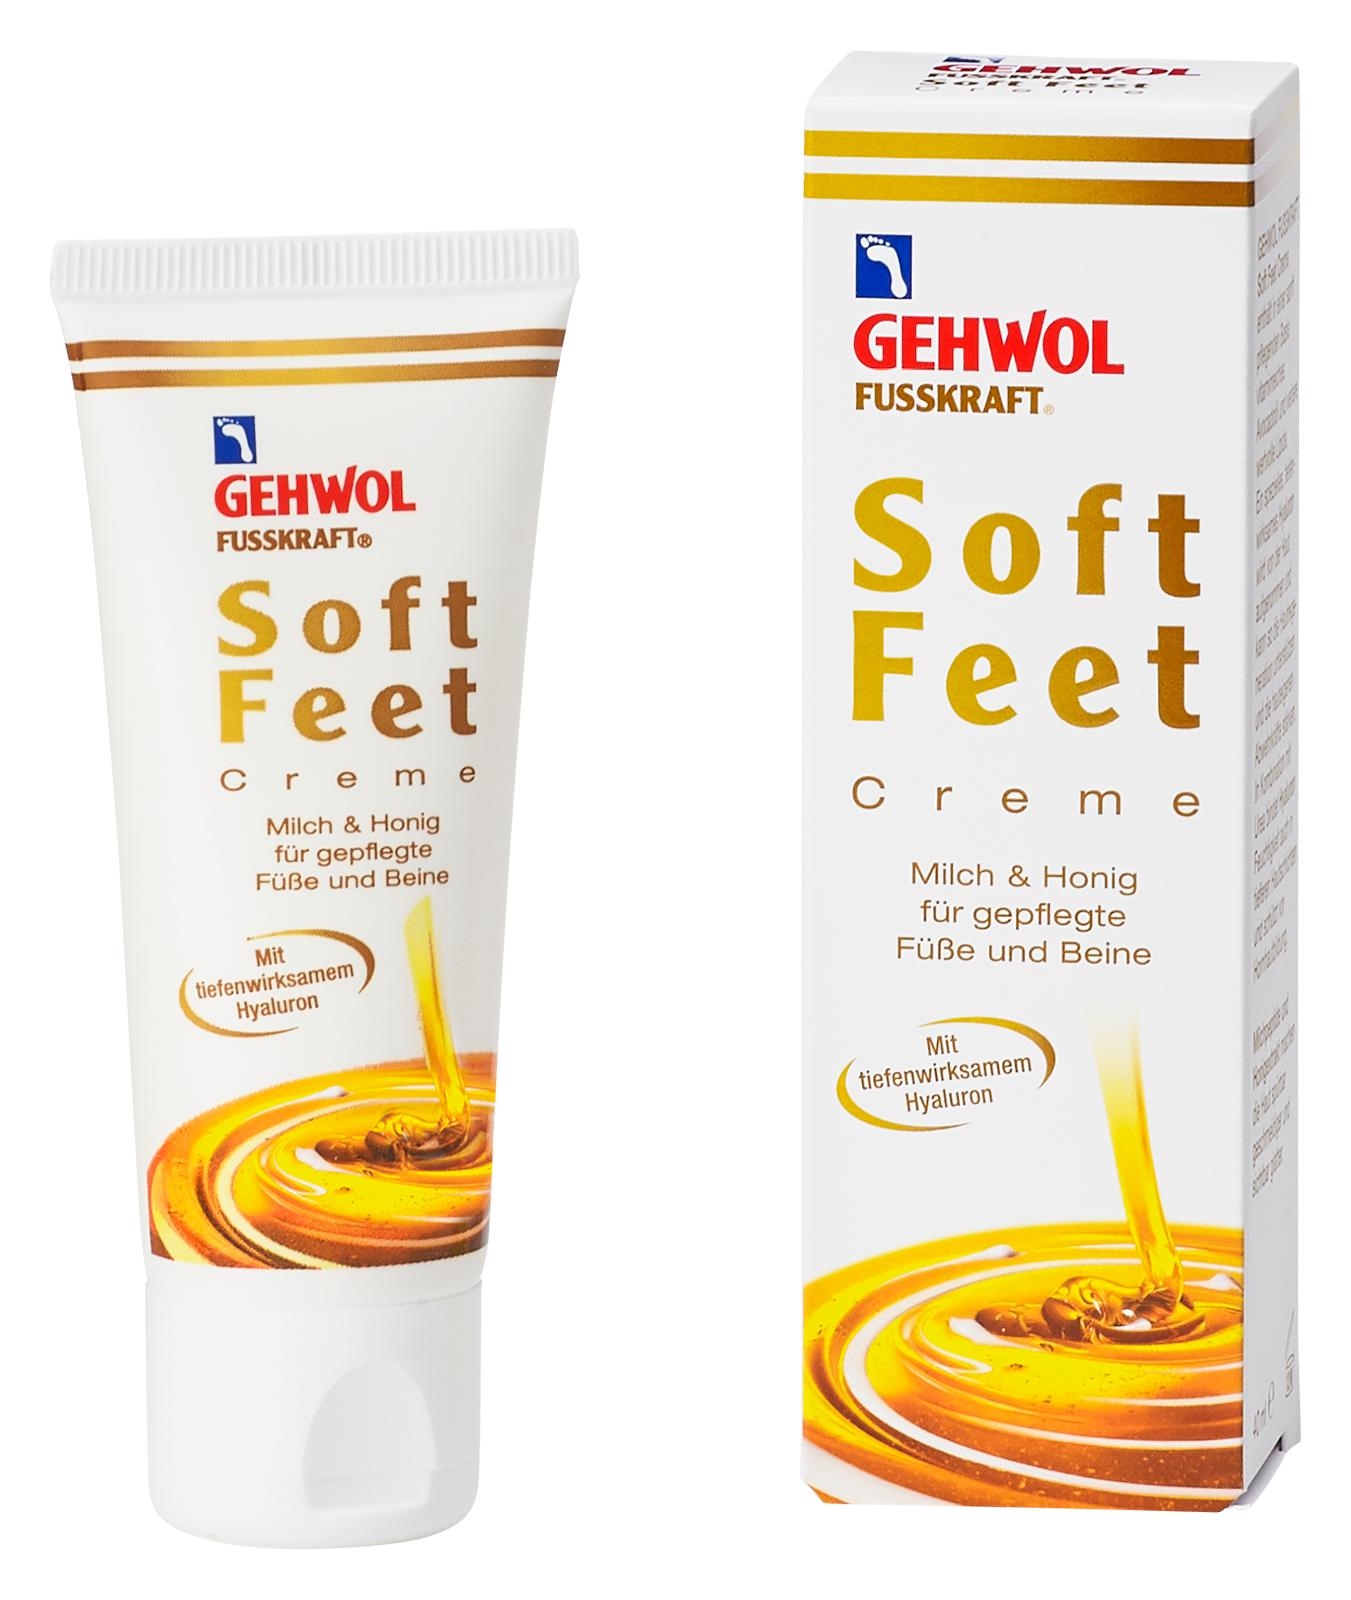 🔷 GEHWOL FUSSKRAFT Soft Feet Creme mit Milch & Honig 125 ml